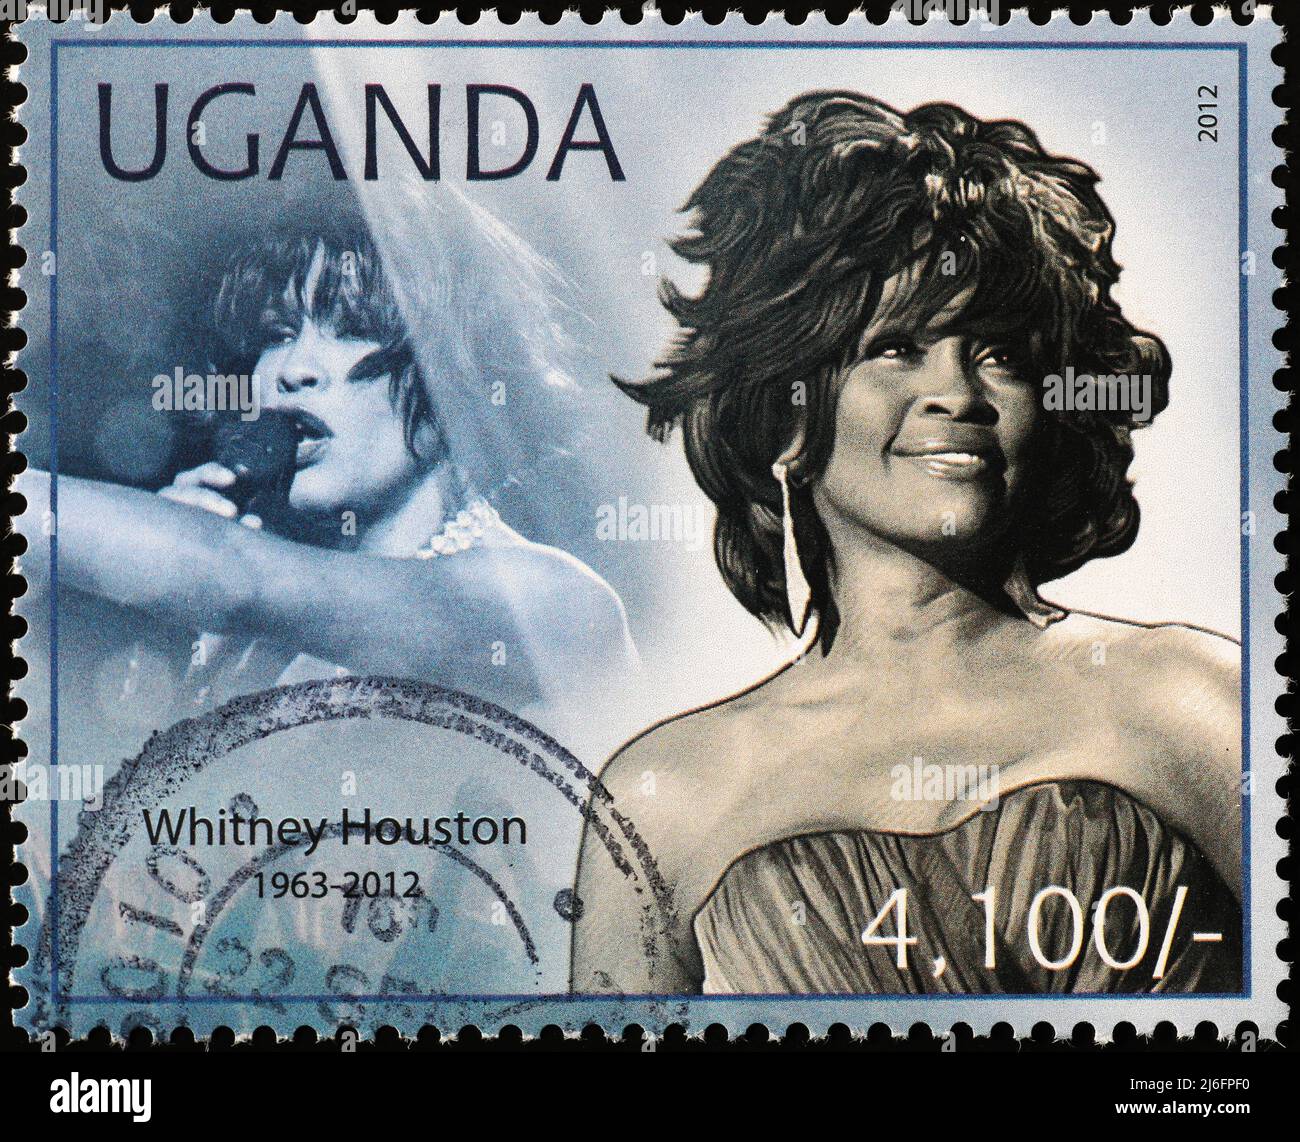 Portraits de Whitney Houston sur le timbre de l'Ouganda Banque D'Images